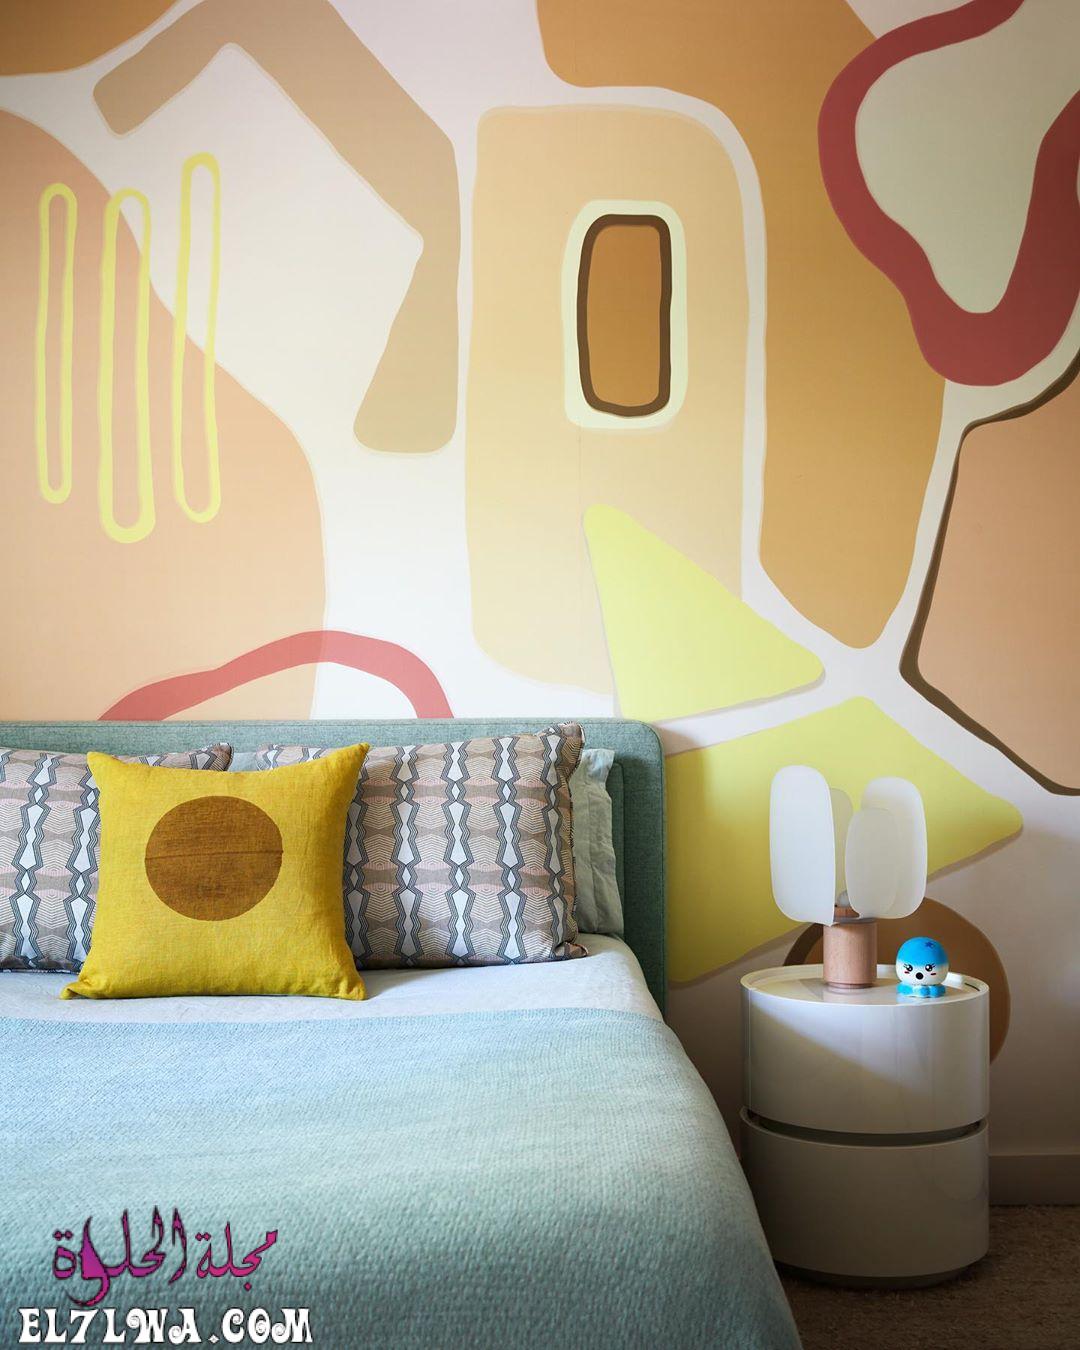 دهانات حوائط غرف نوم باللون الأصفر